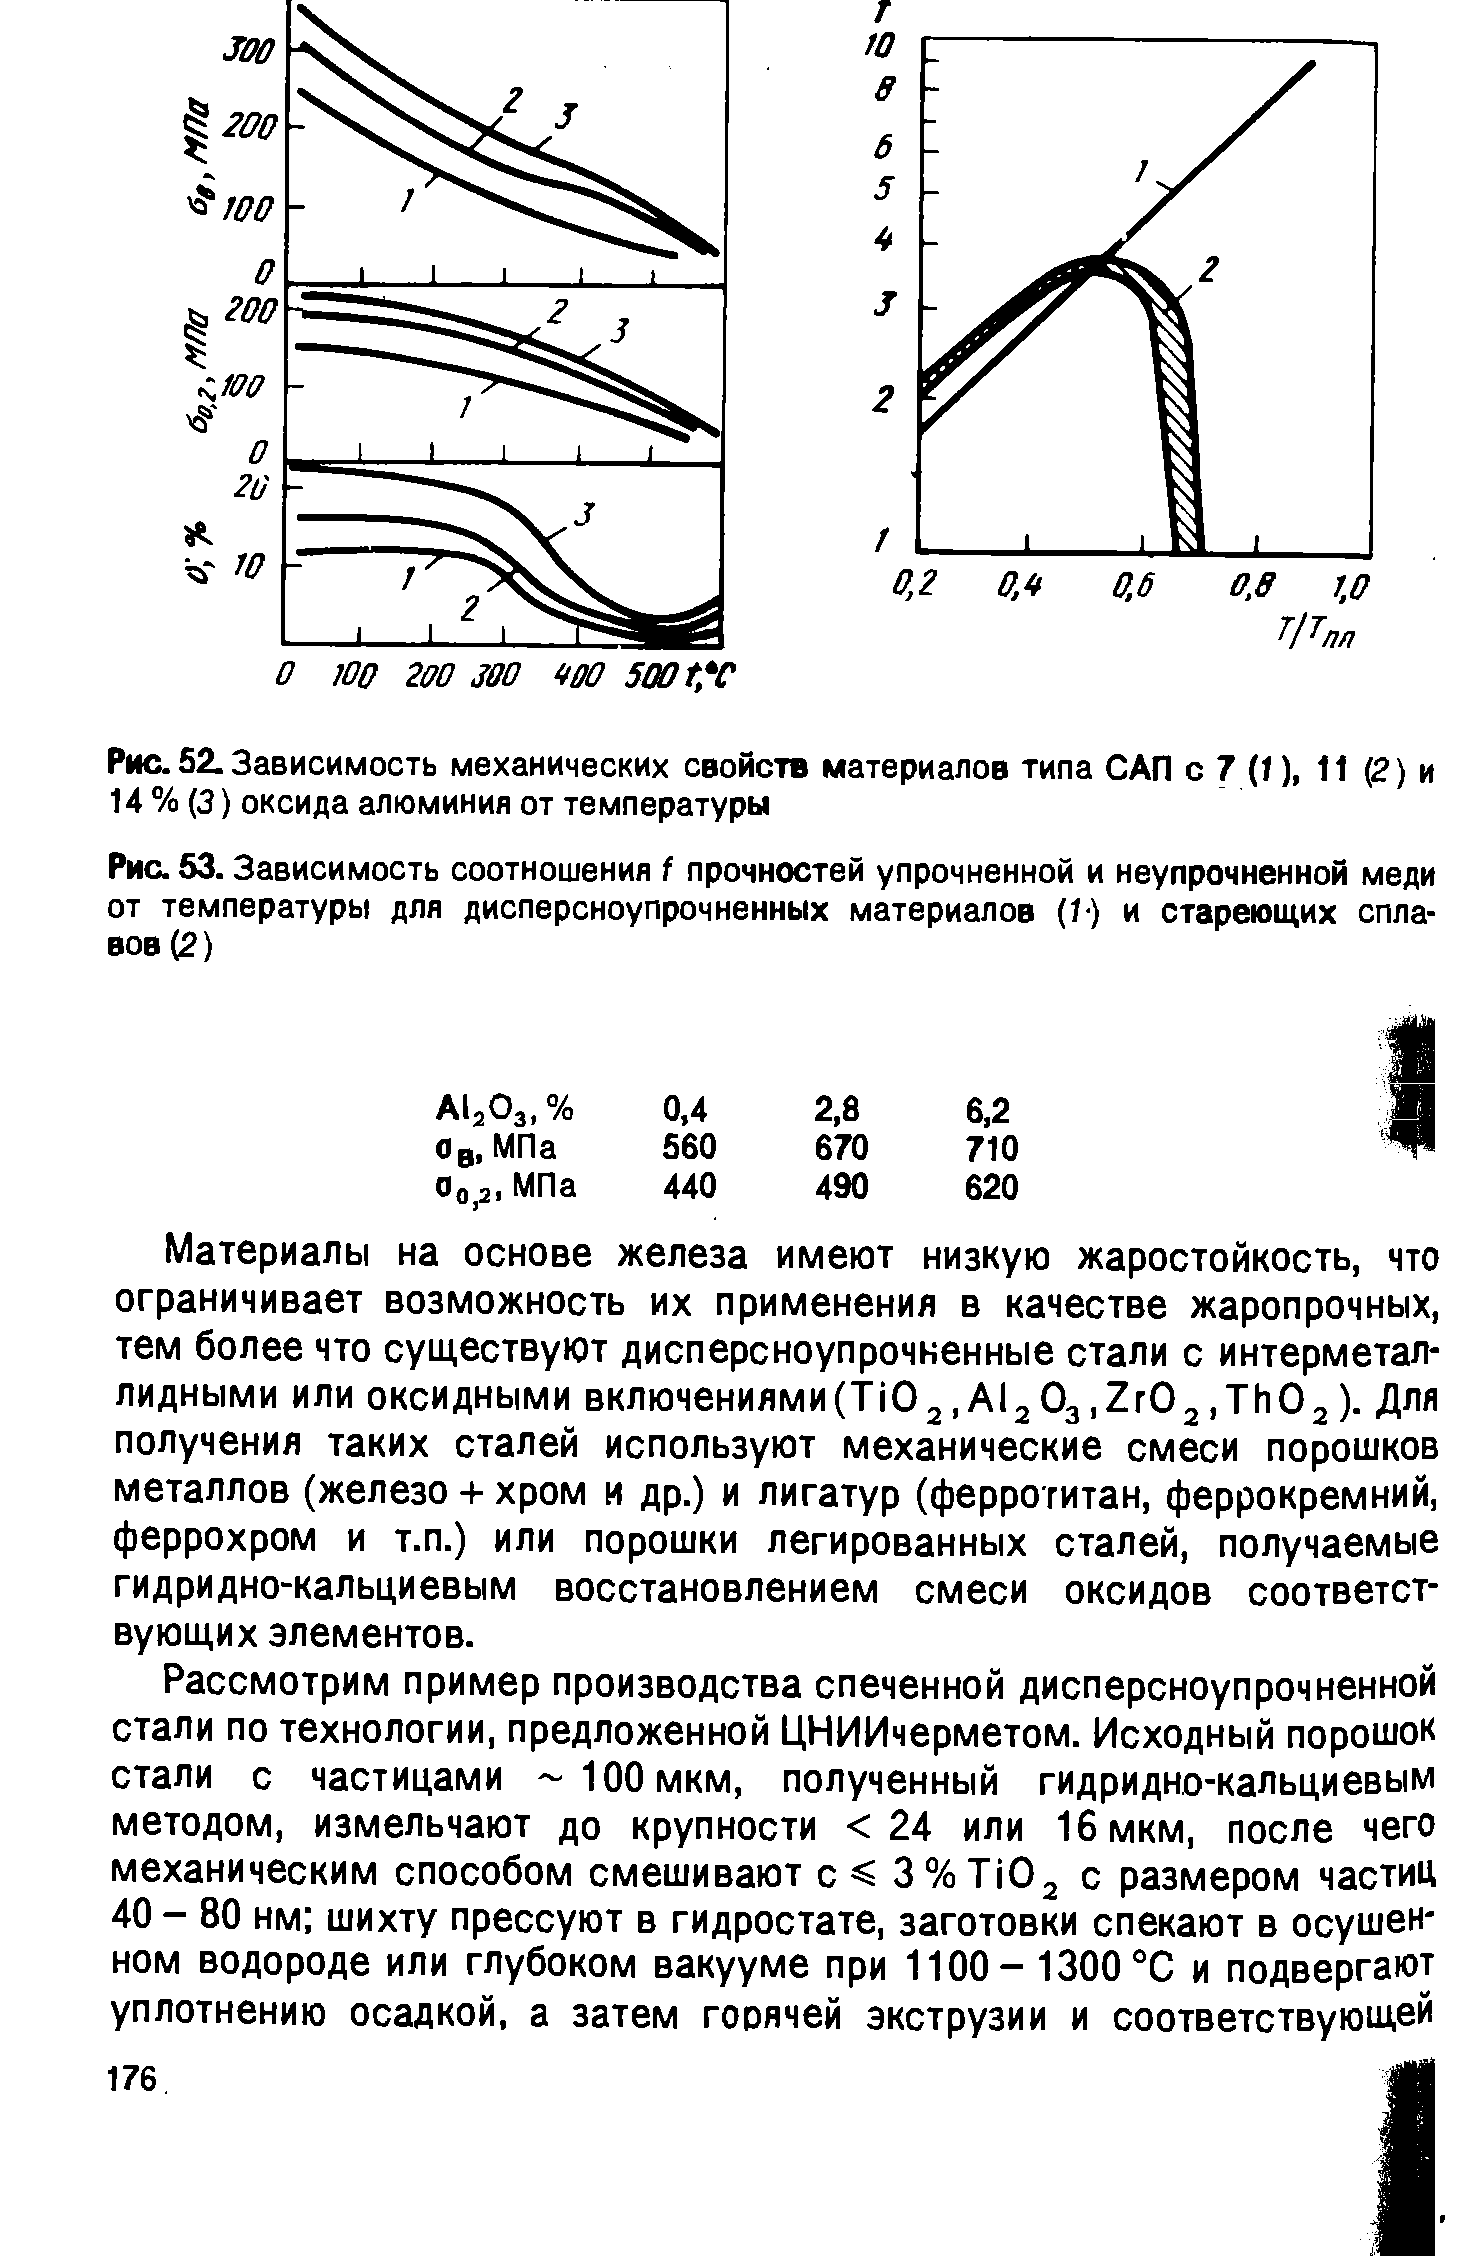 Рис. 53. Зависимость соотношения f прочностей упрочненной и неупрочненной меди от температуры для дисперсноупрочненных материалов (1) и стареющих сплавов (2)
